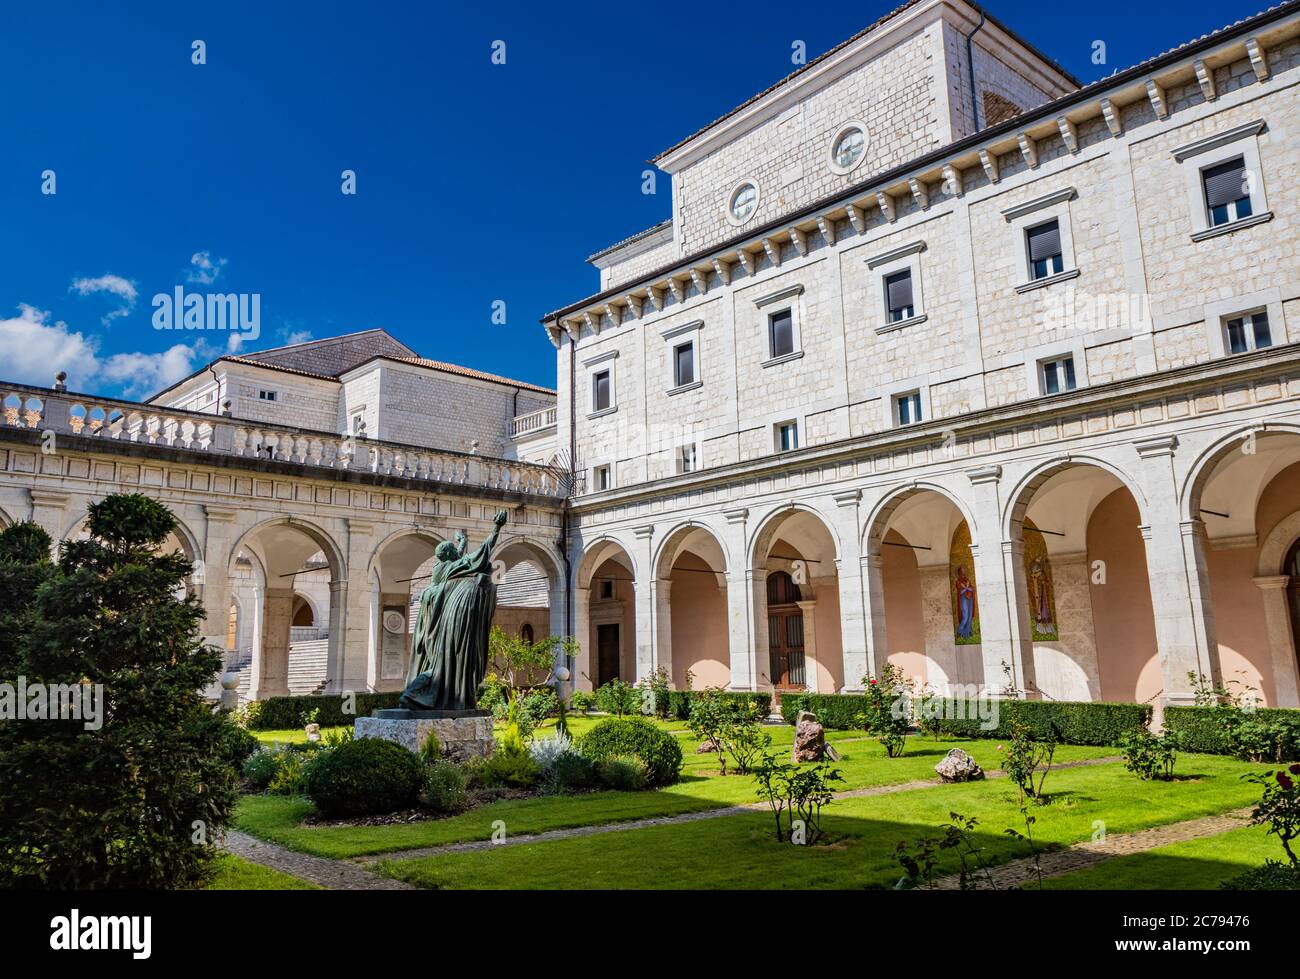 3 de julio de 2020 - Abadía de Montecassino, Cassino, Italia - Monasterio benedictino situado en la parte superior de Montecassino es el monasterio más antiguo de Italia. El clo Foto de stock